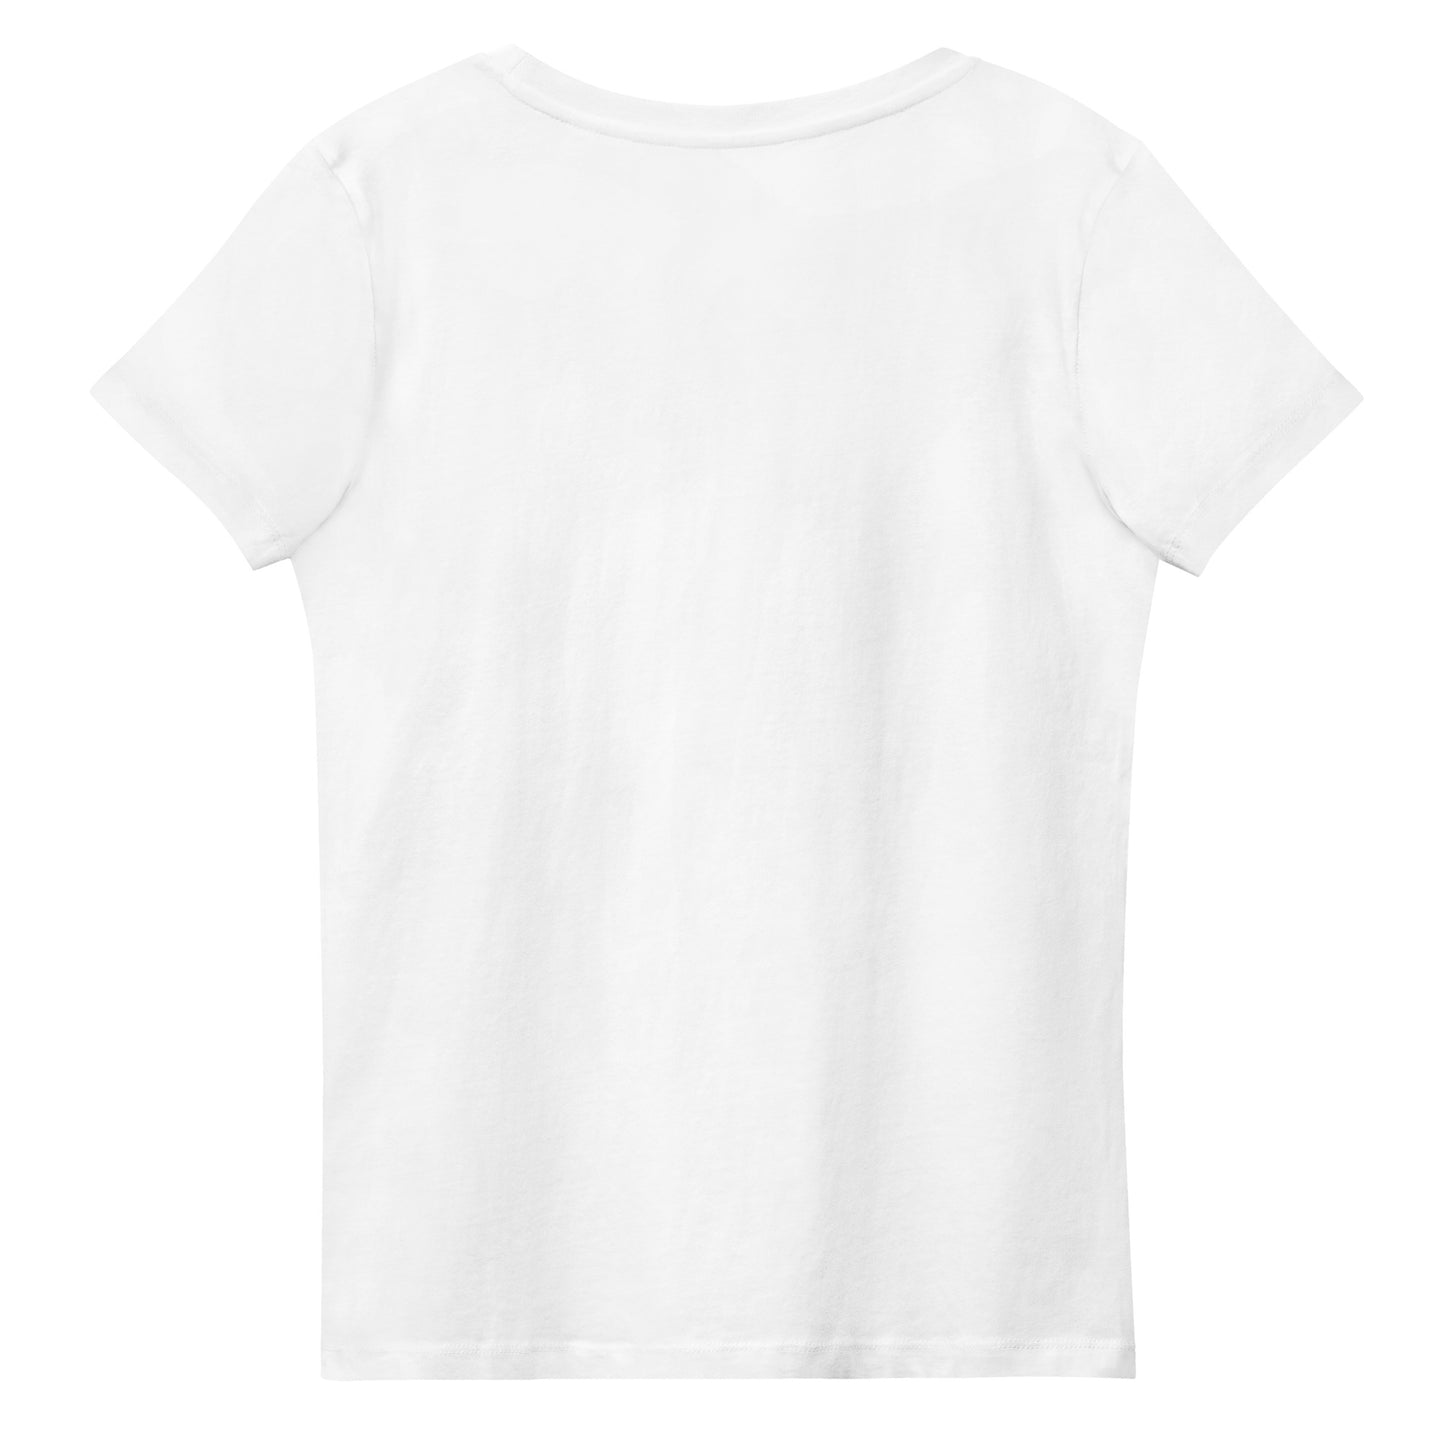 Jurylid Damesbrug - Getailleerd Eco-T-shirt (wit) voor dames